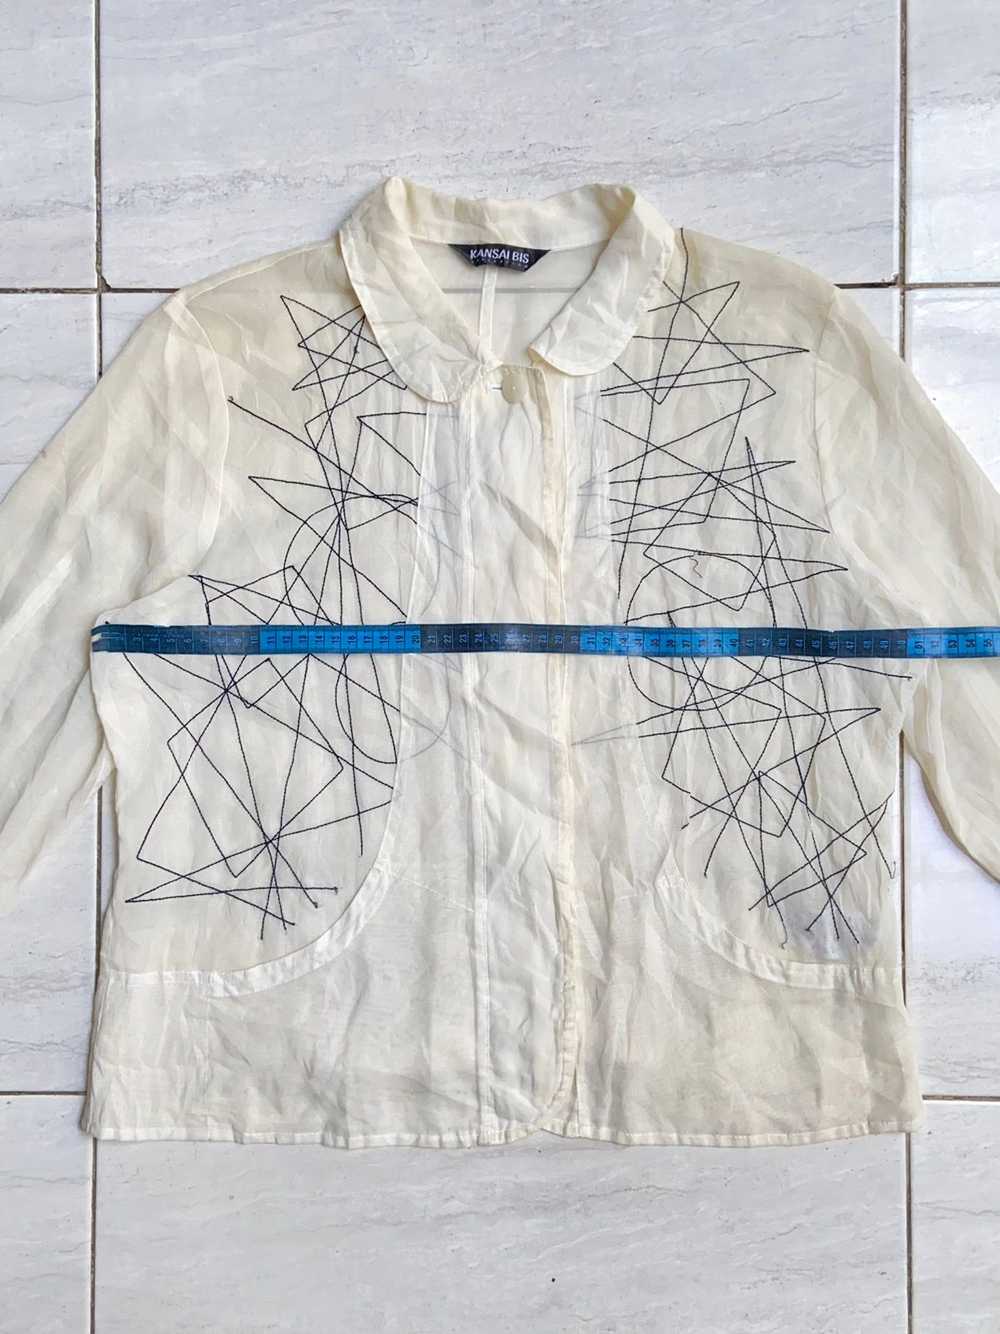 Kansai Yamamoto KANSAI BIS White Mesh Shirt - image 3